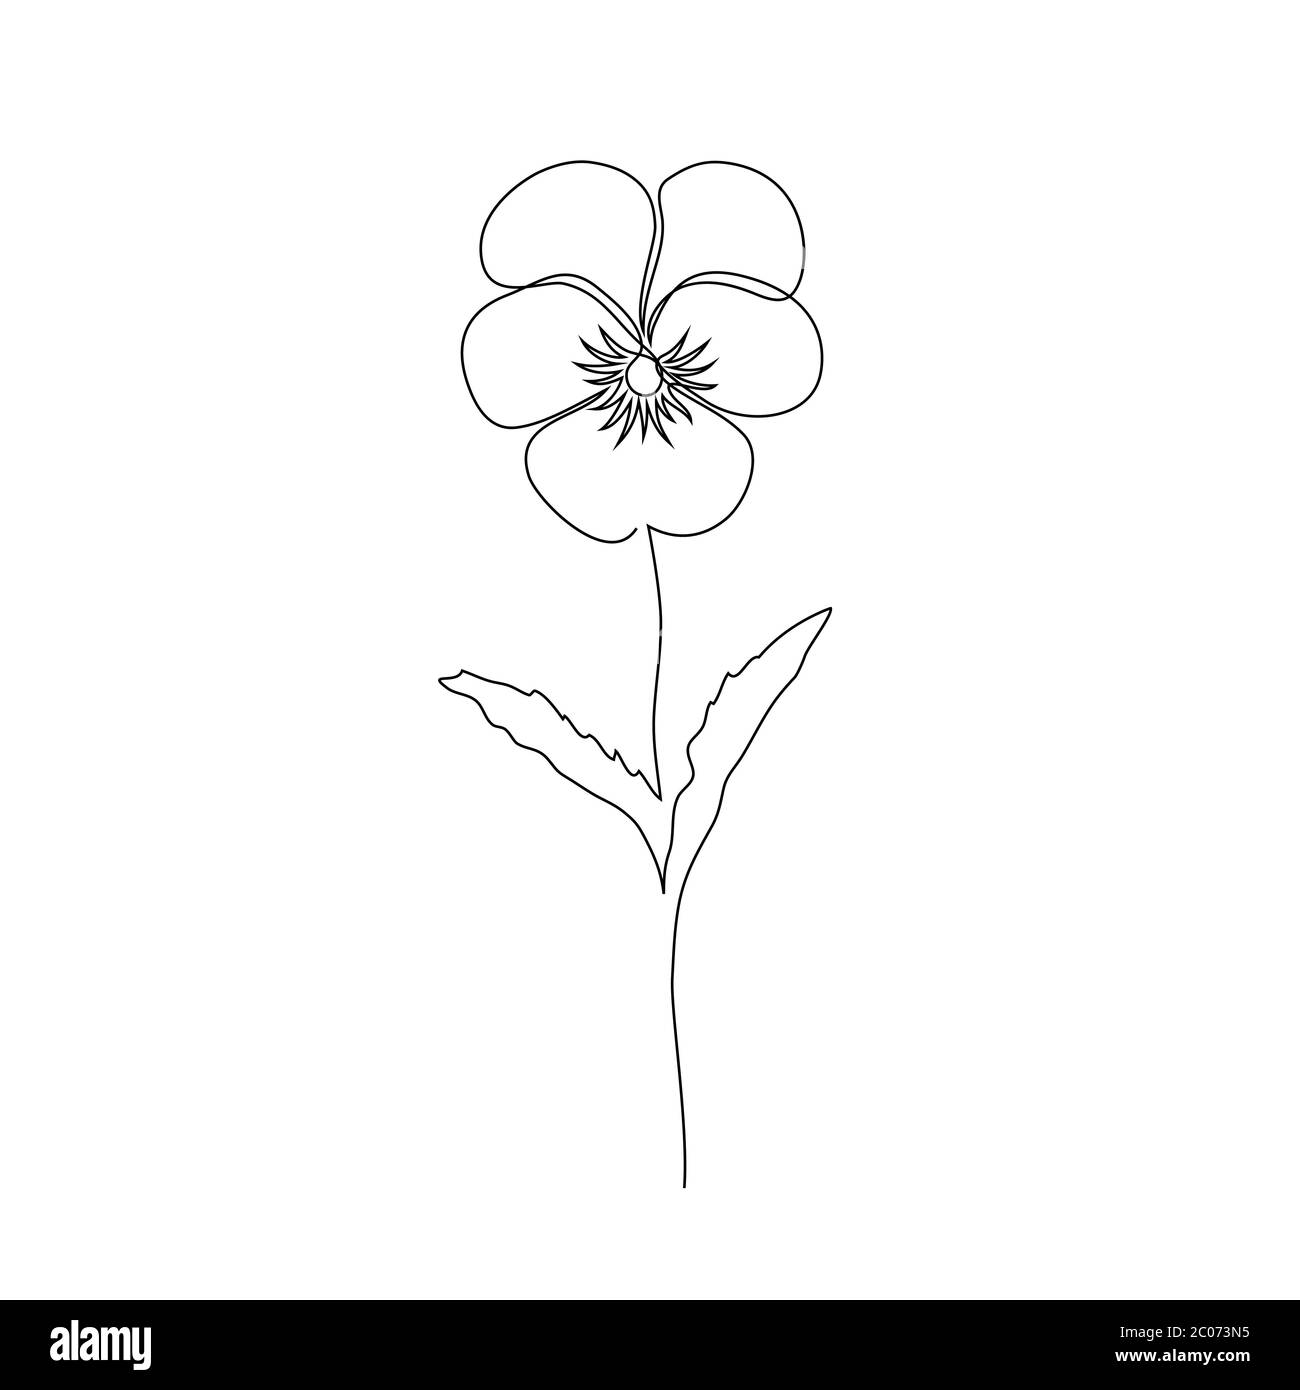 Violet flower on white Stock Vector Image & Art - Alamy